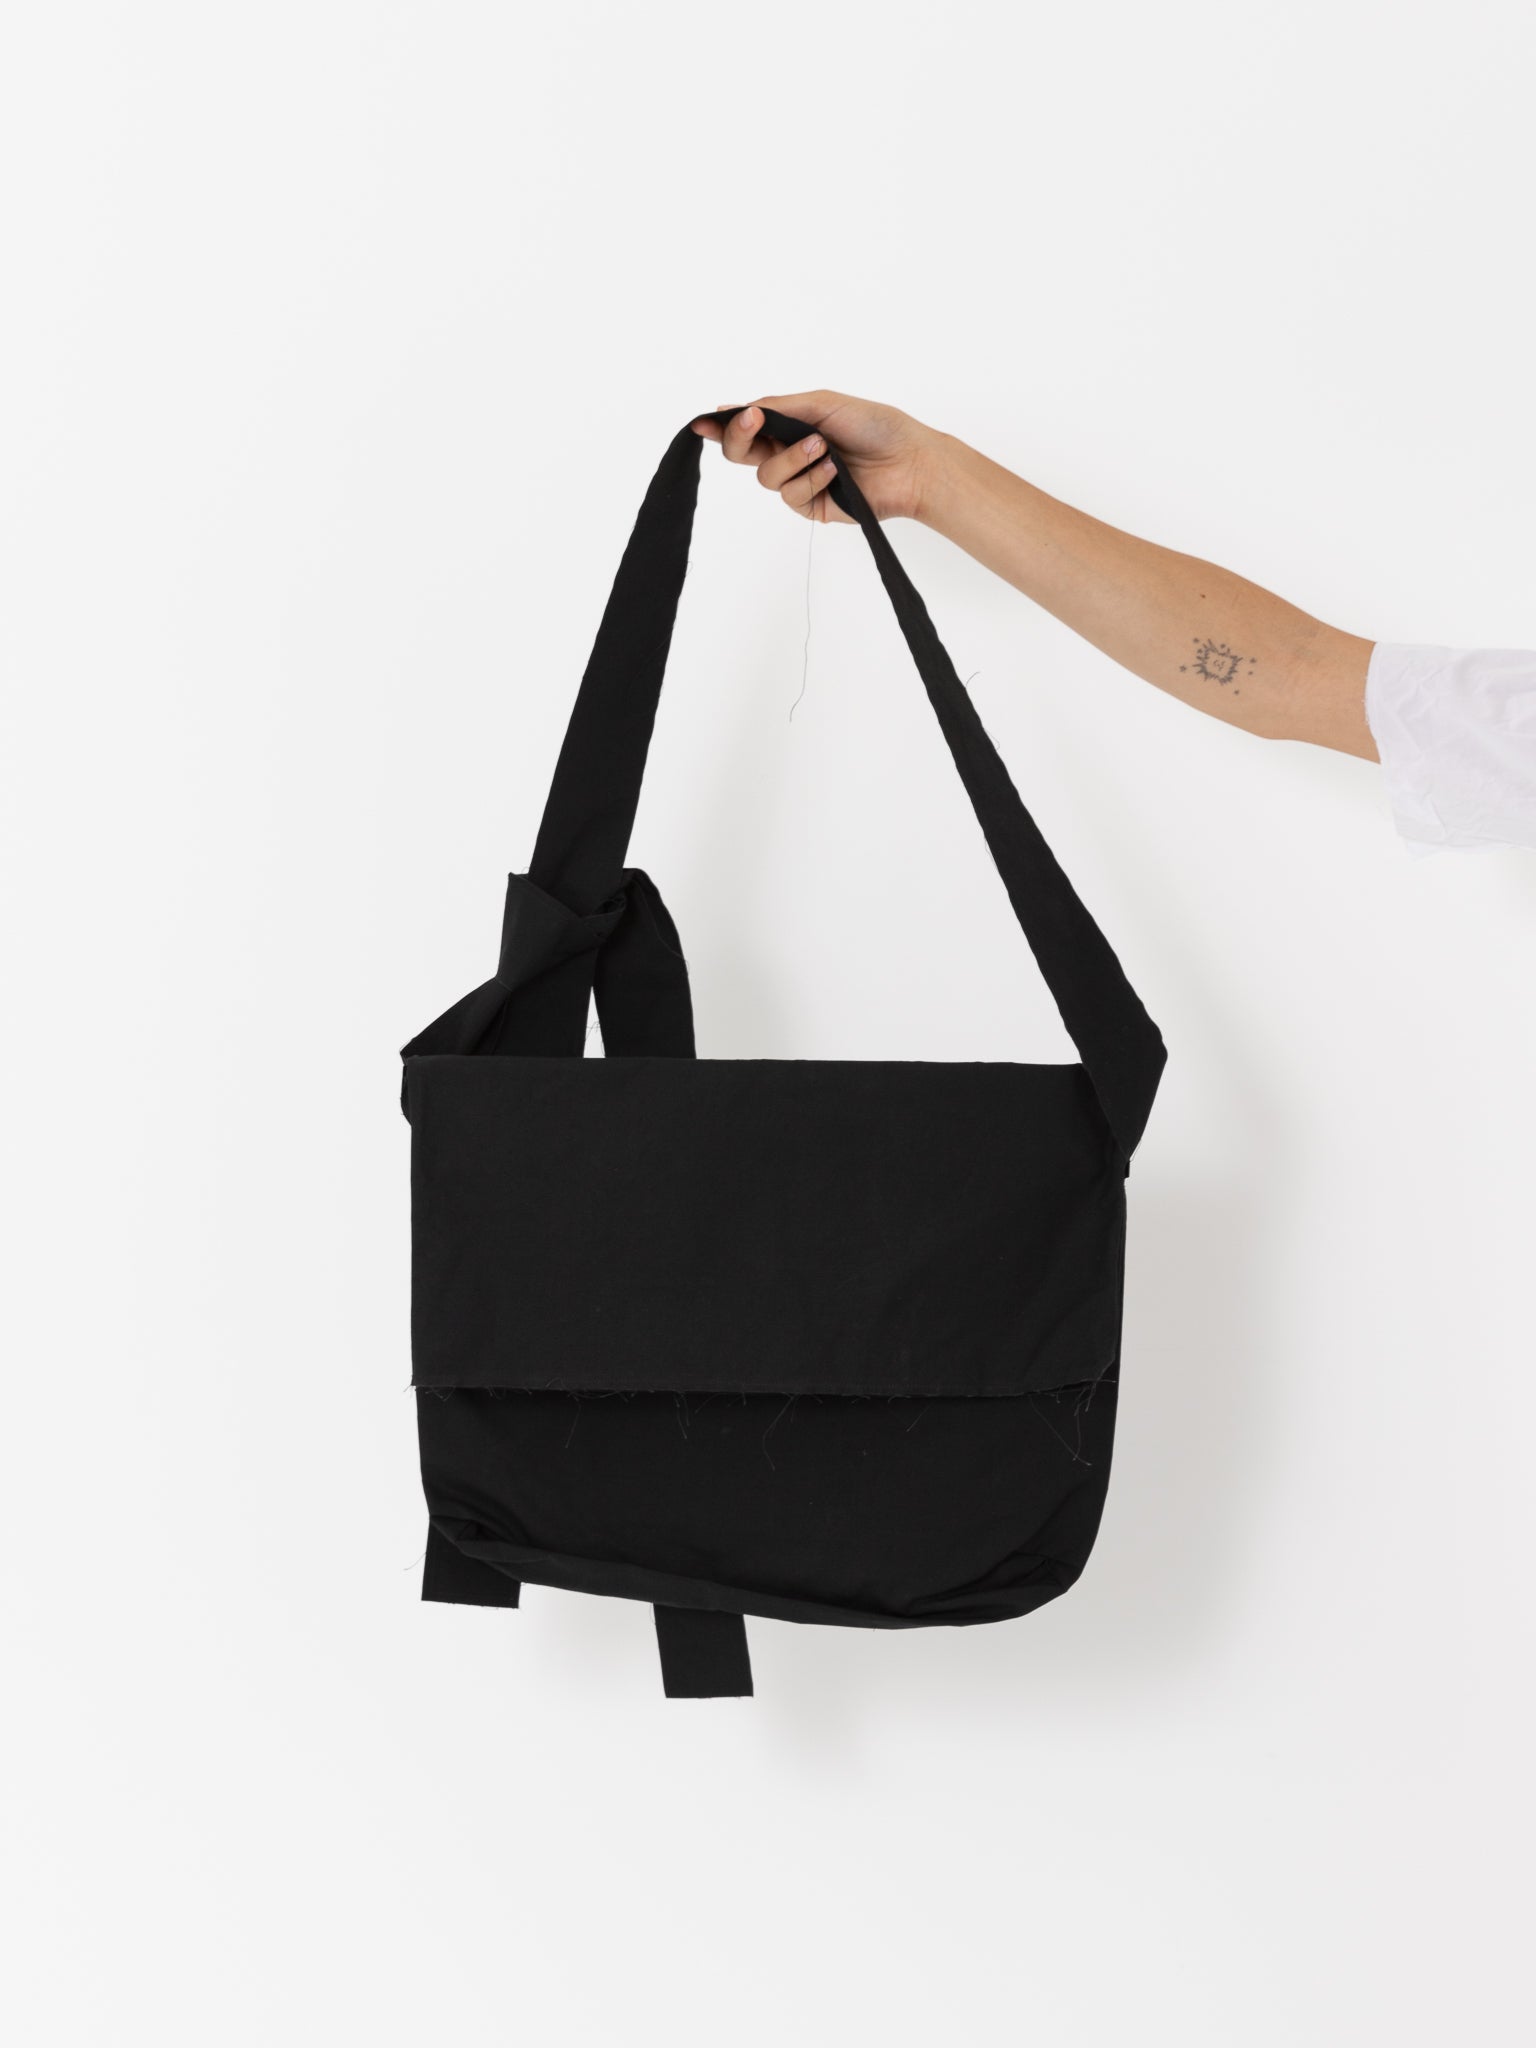 SCHA Big Shoulder Bag, Black - Worthwhile, Inc.